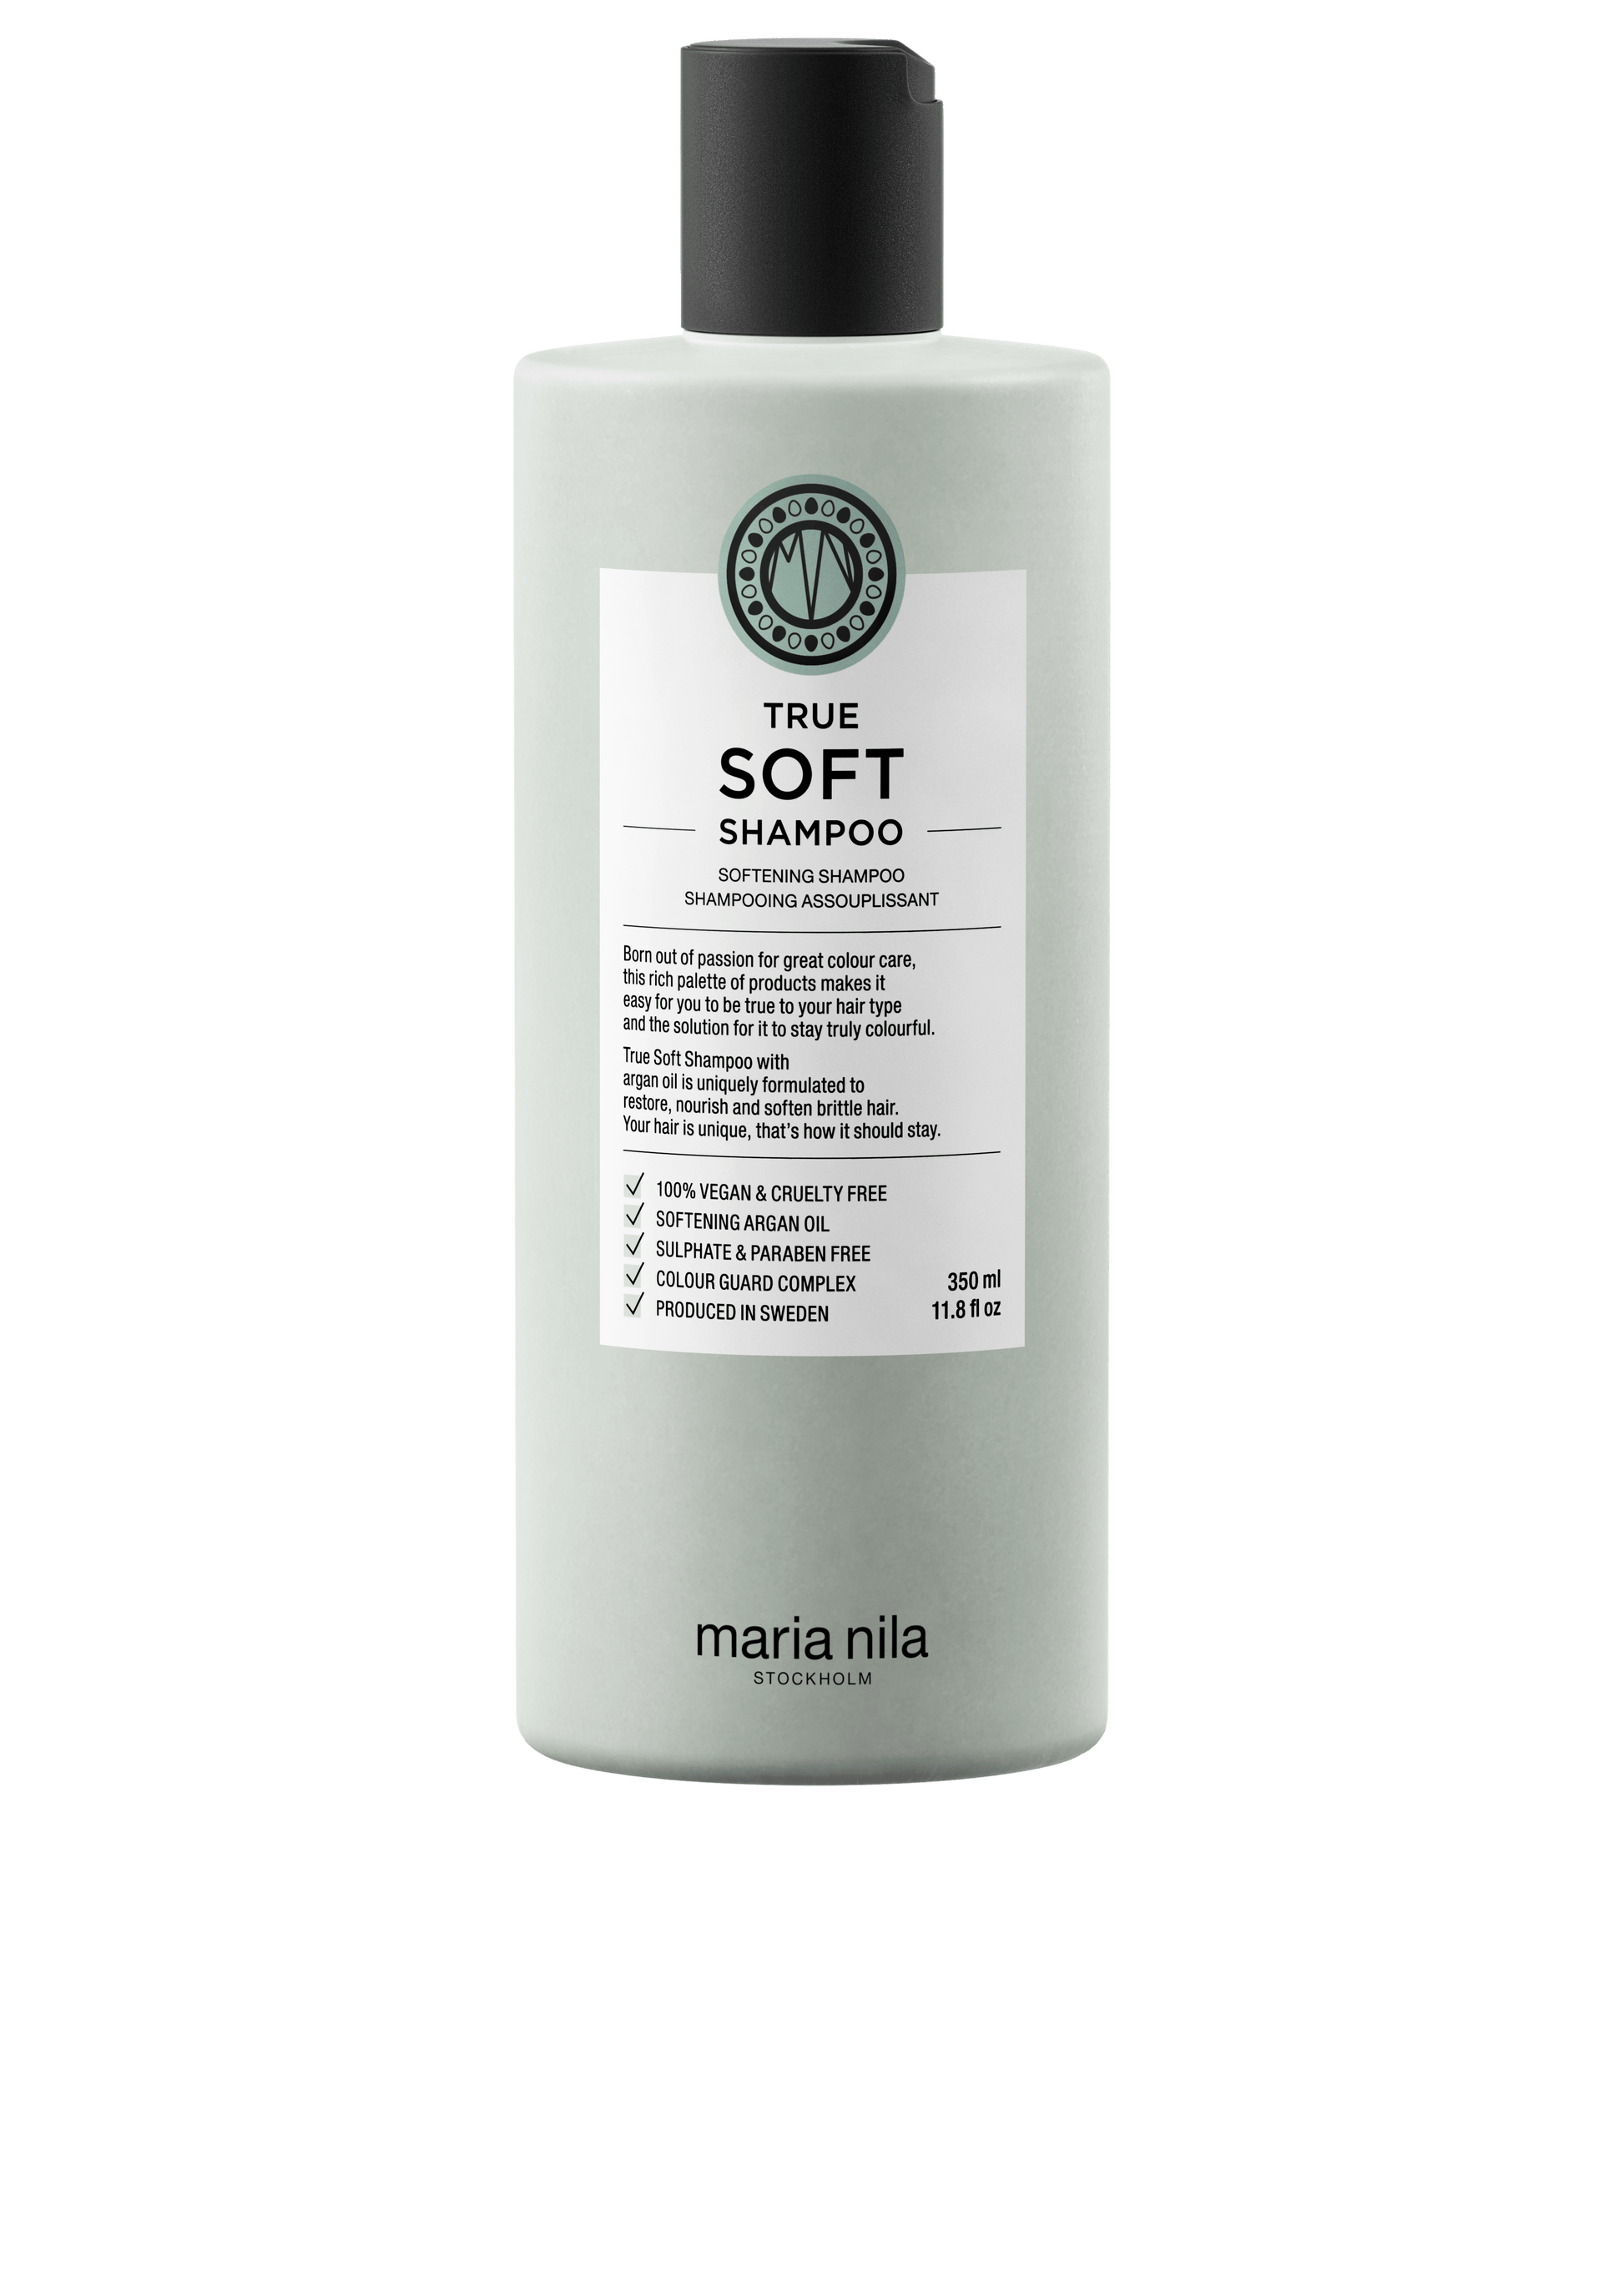 True Soft Shampoo - The Coloroom 